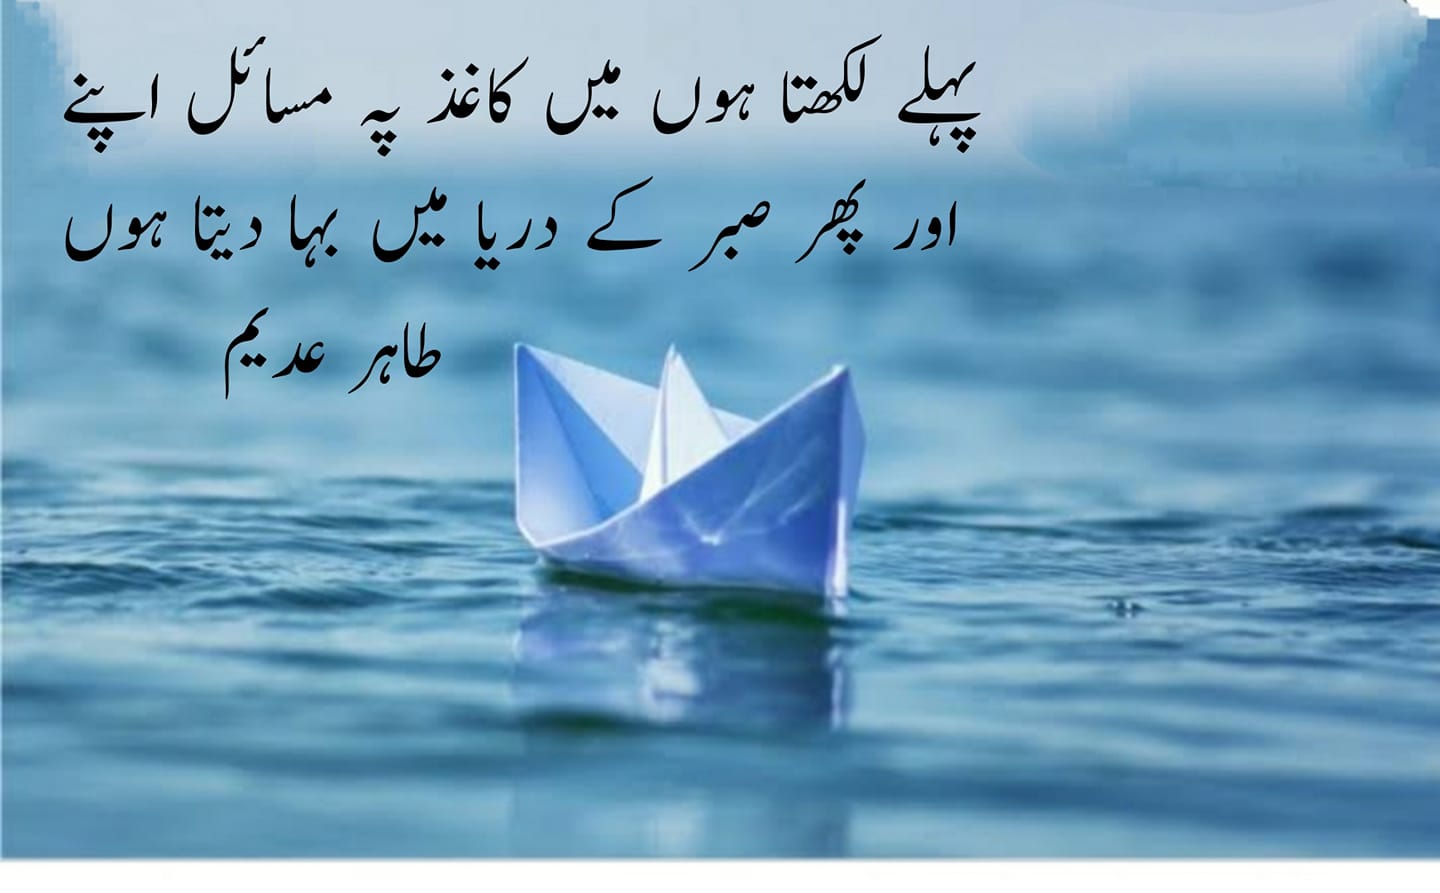 Best-Urdu-2-Lines Poetry-Best-Urdu-Poetry-Collection--2-Line-Poetry-sad-Urdu-poetry-Love-poetry-Hindi-Shayari-with-picture-Sad-Poetry-WhatsApp-Shayari-WhatsApp-status-2-line-WhatsApp-status